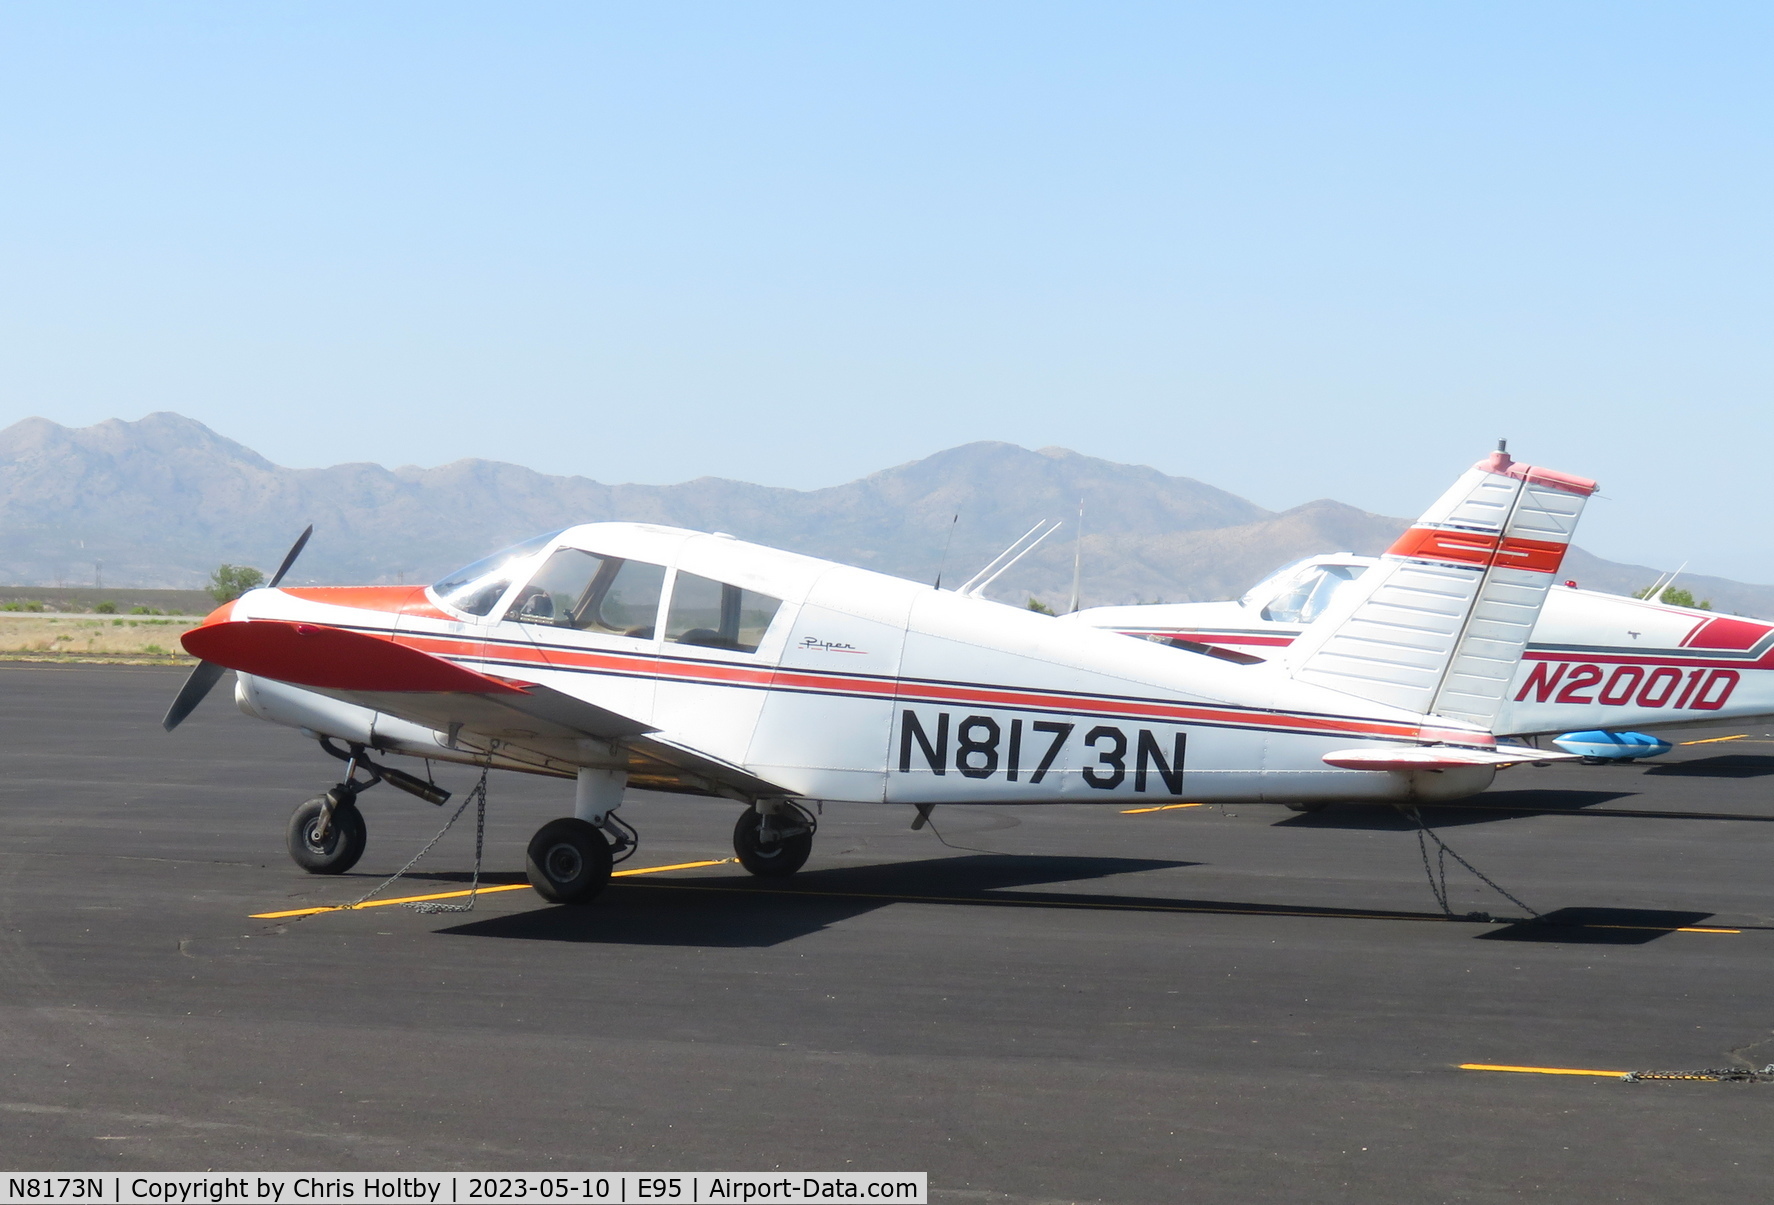 N8173N, 1968 Piper PA-28-140 C/N 28-25369, Parked at its base Benson Municipal Airport, Arizona